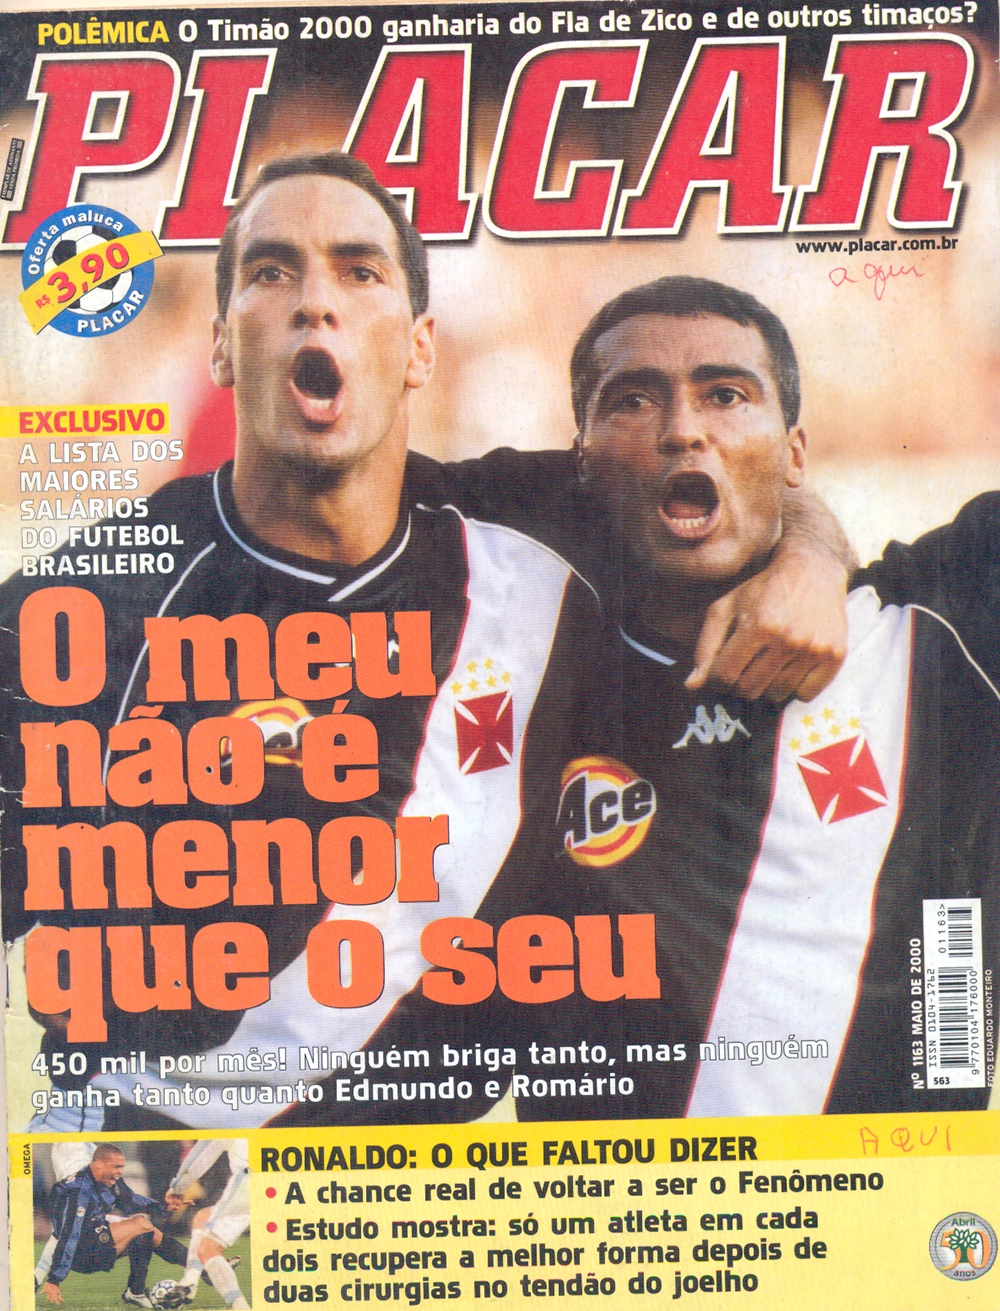 Edmundo e Romário estamparam a capa da Revista Placar do mês de maio do ano 2000. Imagem: reprodução